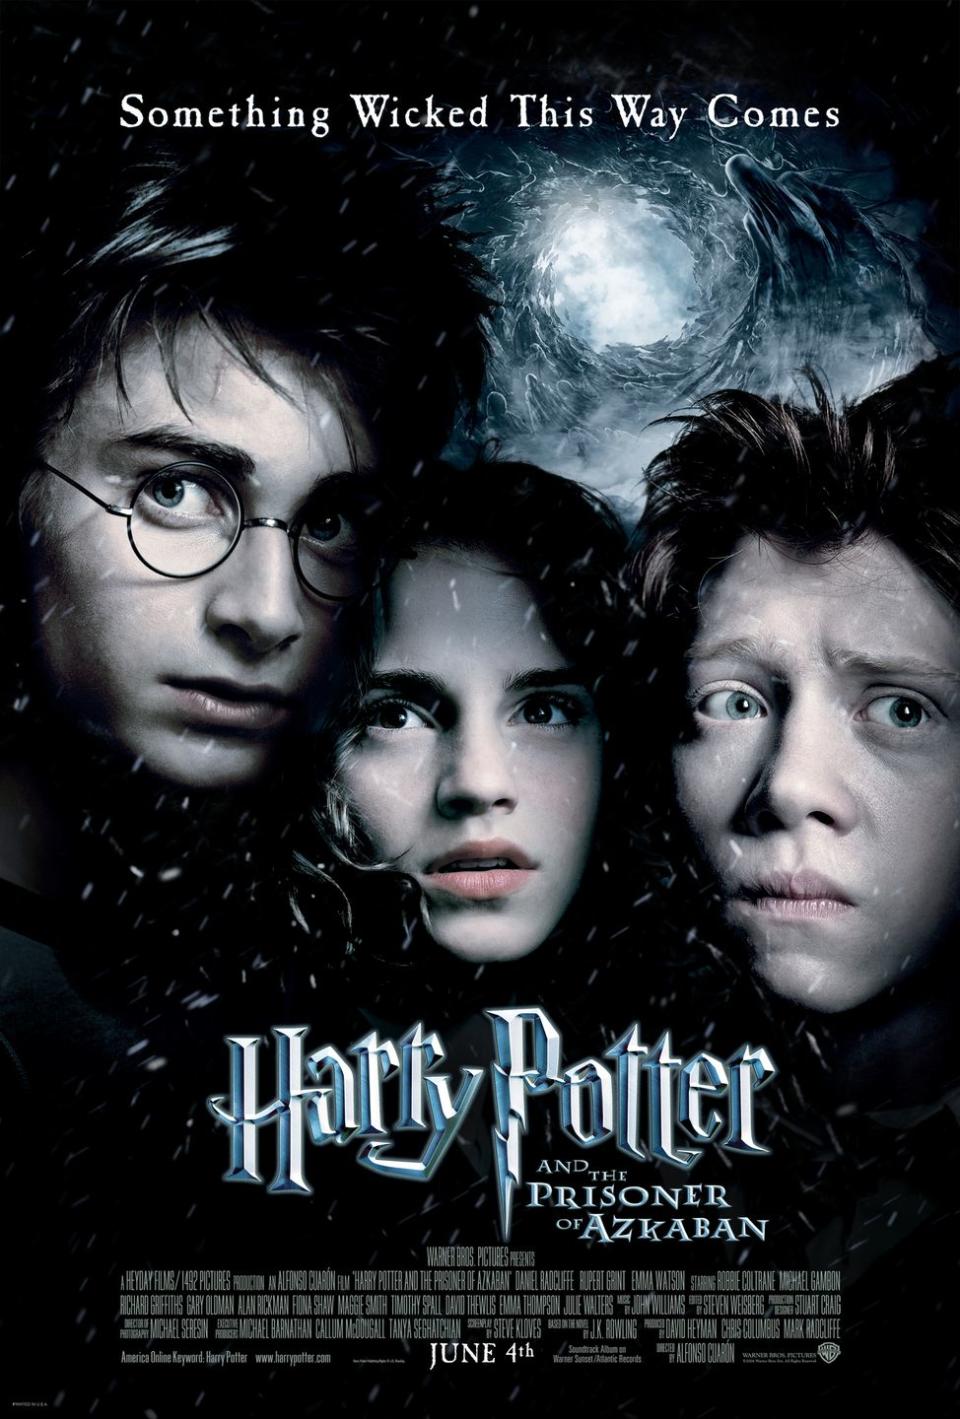 5) Harry Potter and the Prisoner of Azkaban